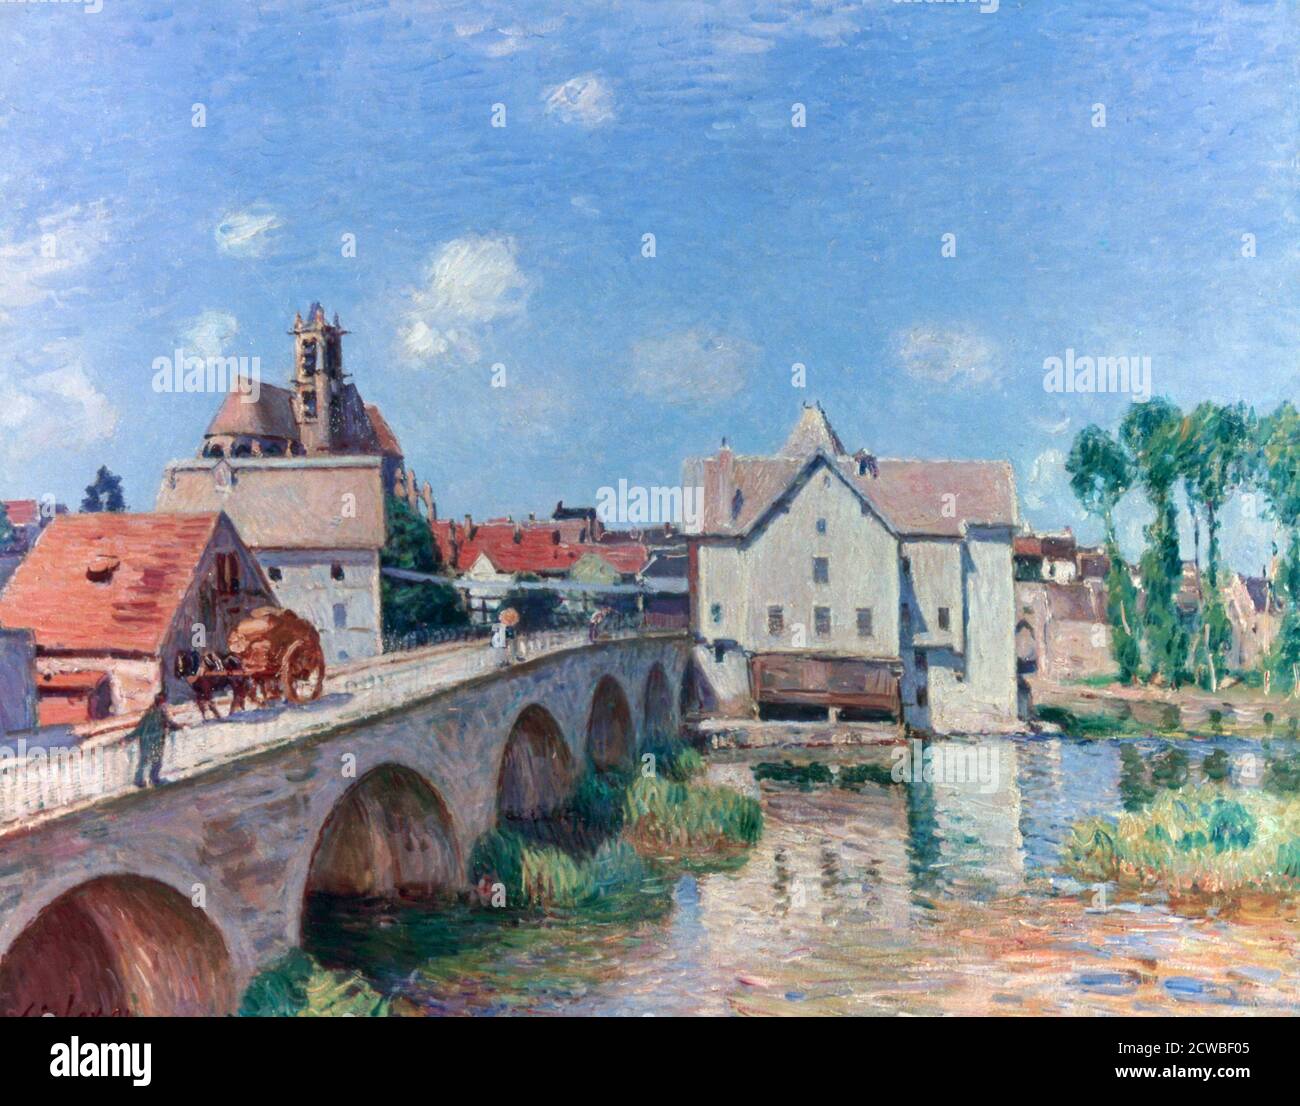 The Bridge at Moret', 1893. Artista: Alfred Sisley. Alfred Sisley è stato un pittore britannico di origine francese e membro fondatore dell'impressionismo. Foto Stock